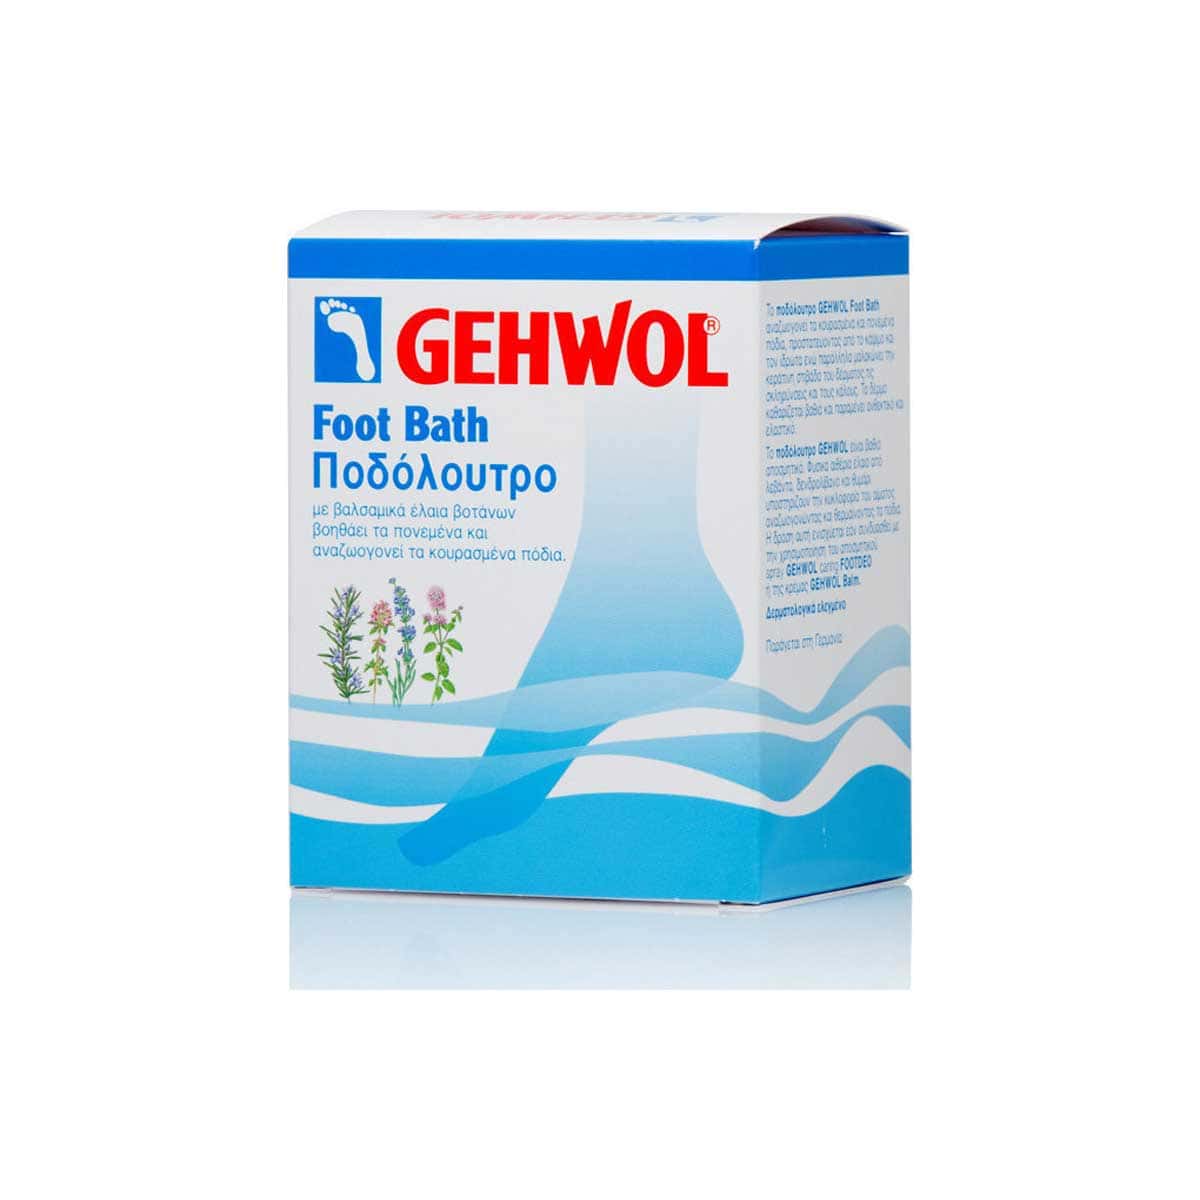 Gehwol-Foot-Bath-200-gr-10-fakeliskoi-4013474113424